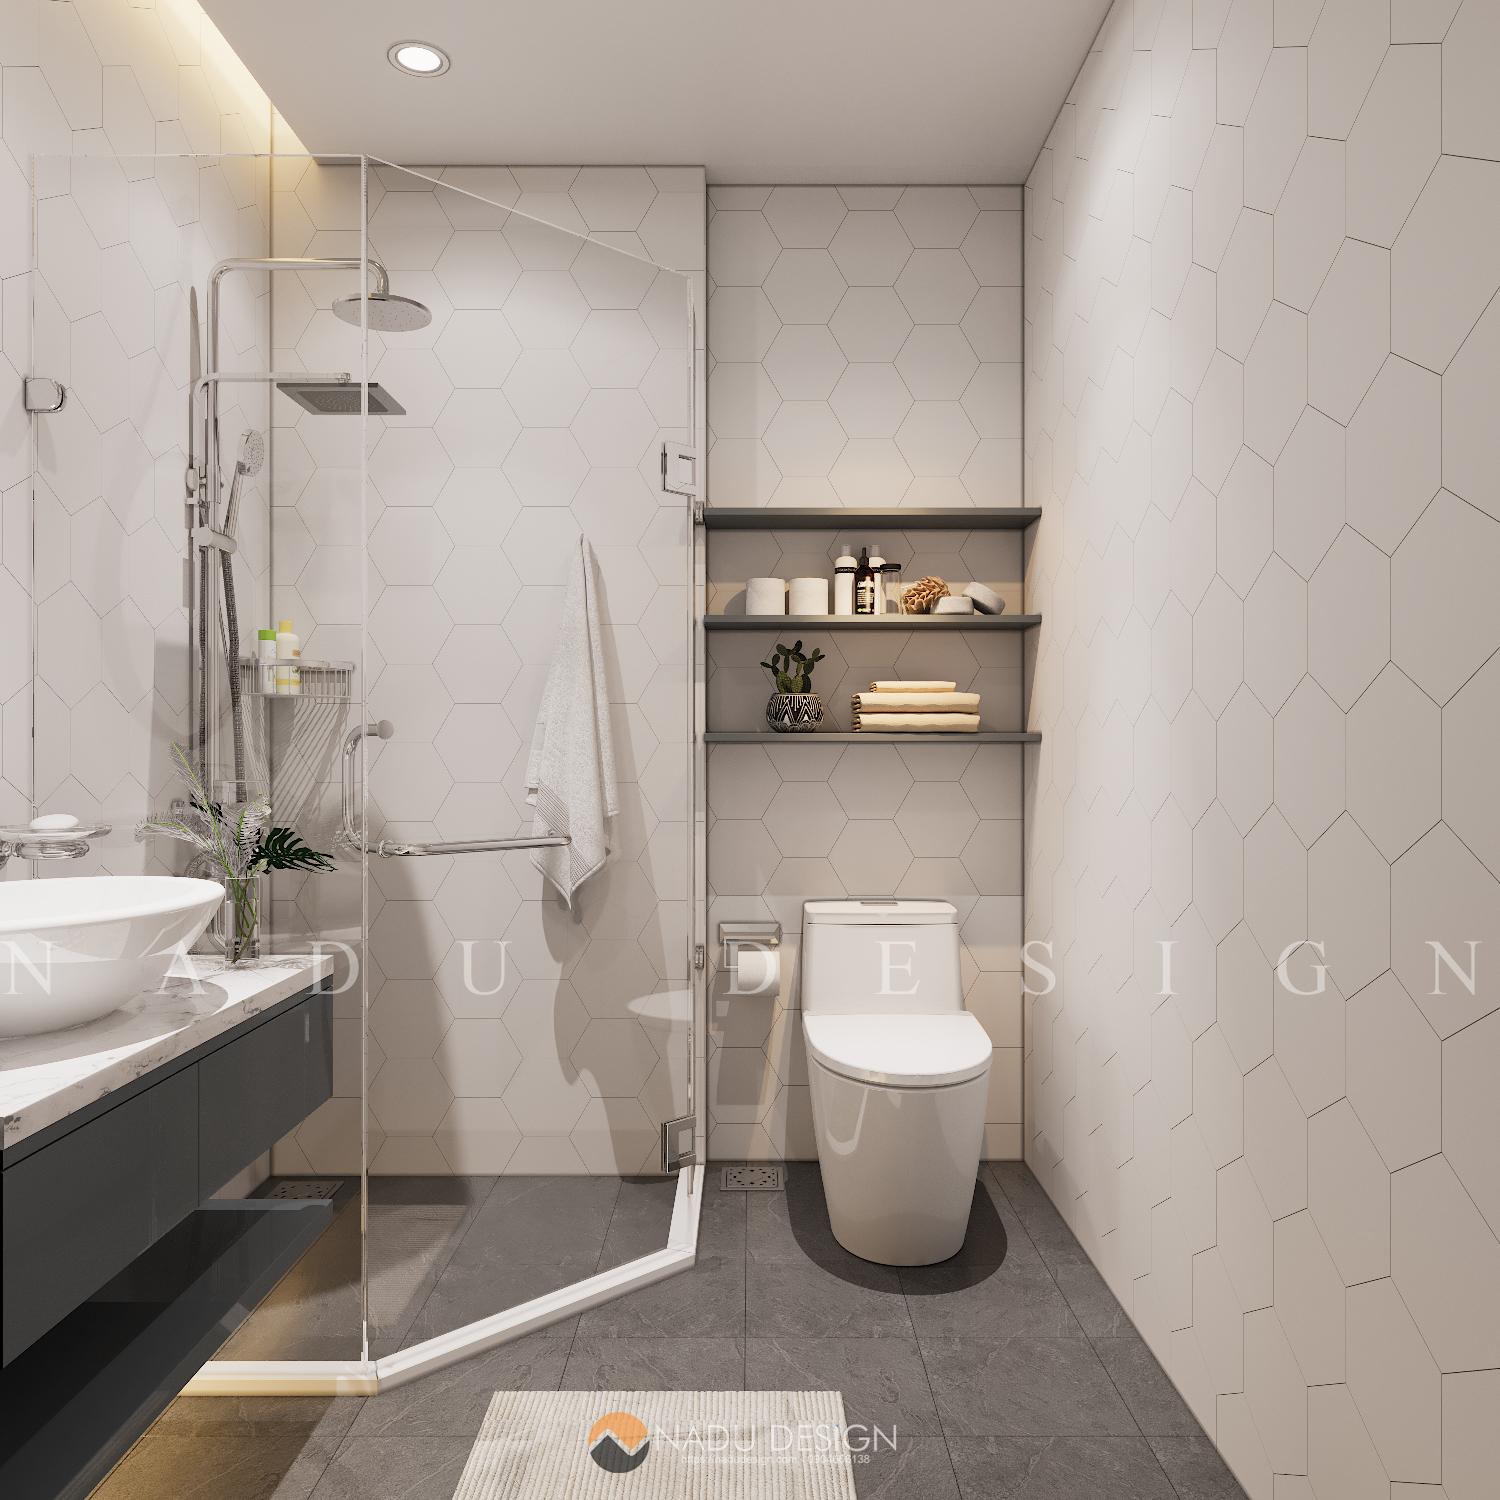 Thiết kế phòng tắm 4m2 cũng đáng được quan tâm như những không gian khác trong nhà. Với phong cách thiết kế hiện đại và đầy đủ tiện nghi, bạn có thể tạo ra một phòng tắm hoàn hảo nhất cho gia đình. Hãy thử ngay!